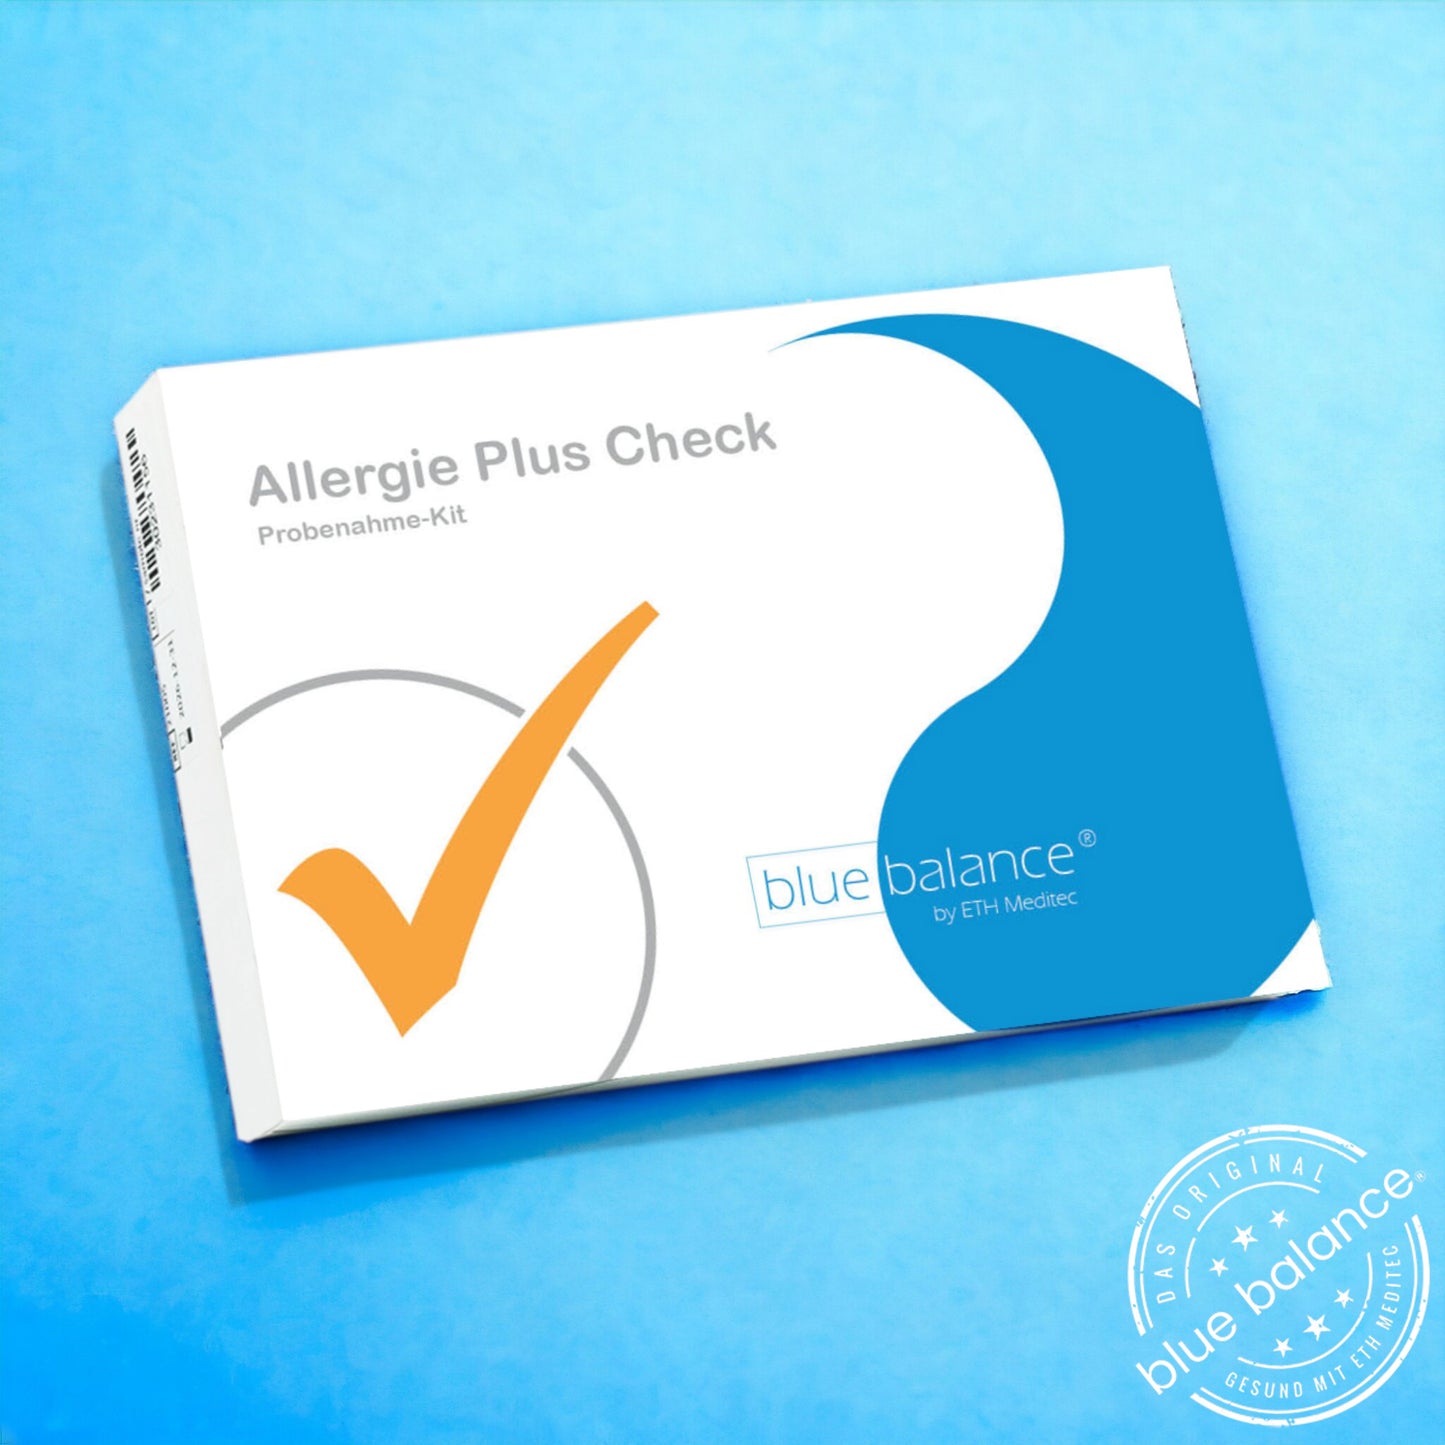 Blutabnahme-Set von blue balance® für eine umfassende Allergenanalyse – sicher und präzise auf hellblauem Untergrund"